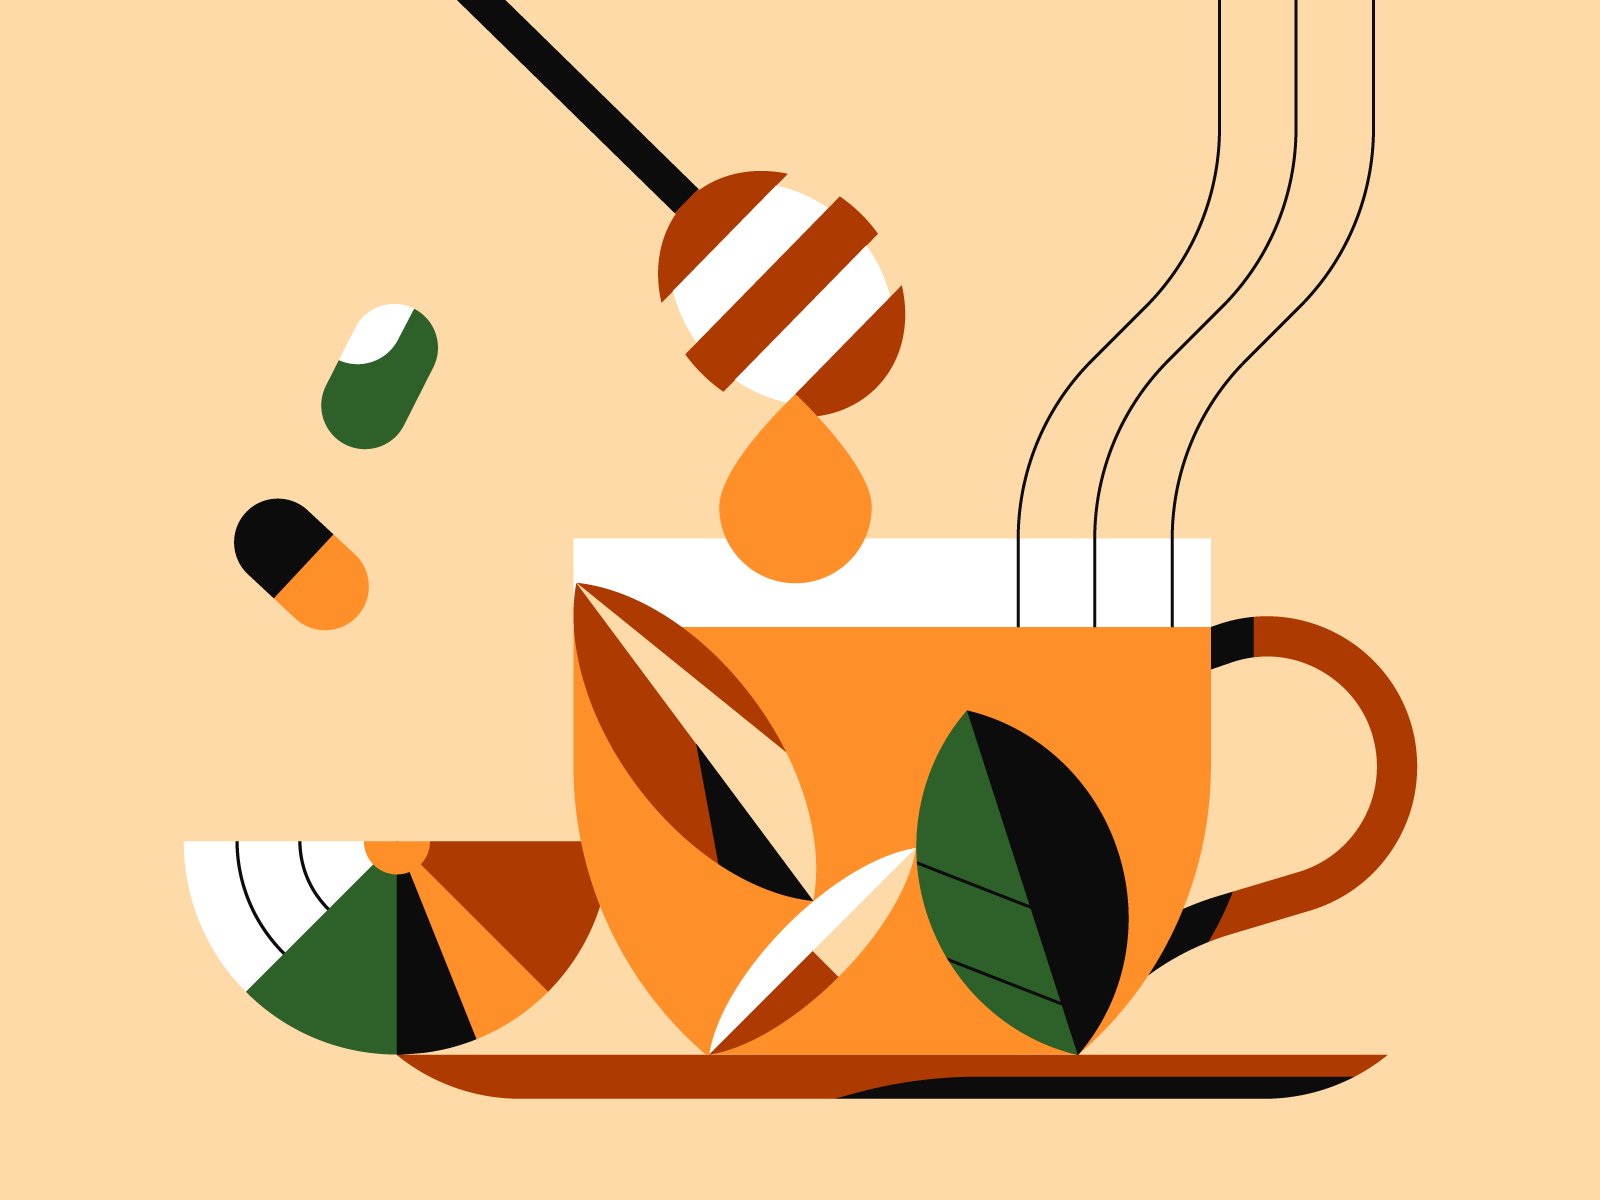 Ilustração de uma xícara de chá sendo adoçada com mel.